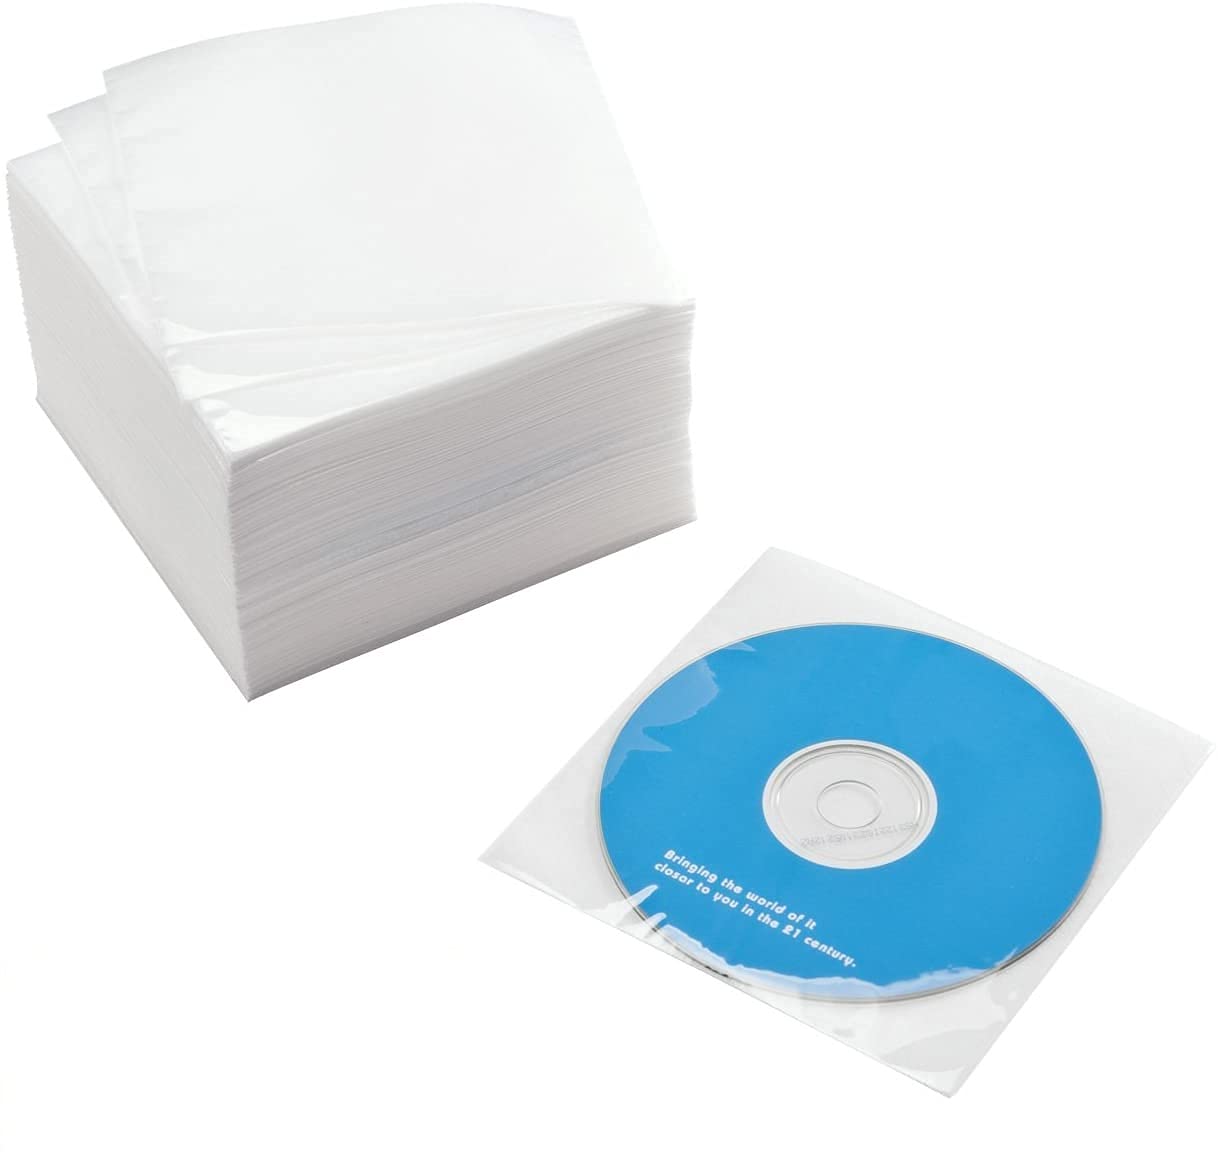 サンワダイレクト DVD・CD不織布ケース 片面 500枚入り 日本製 200-FCD044